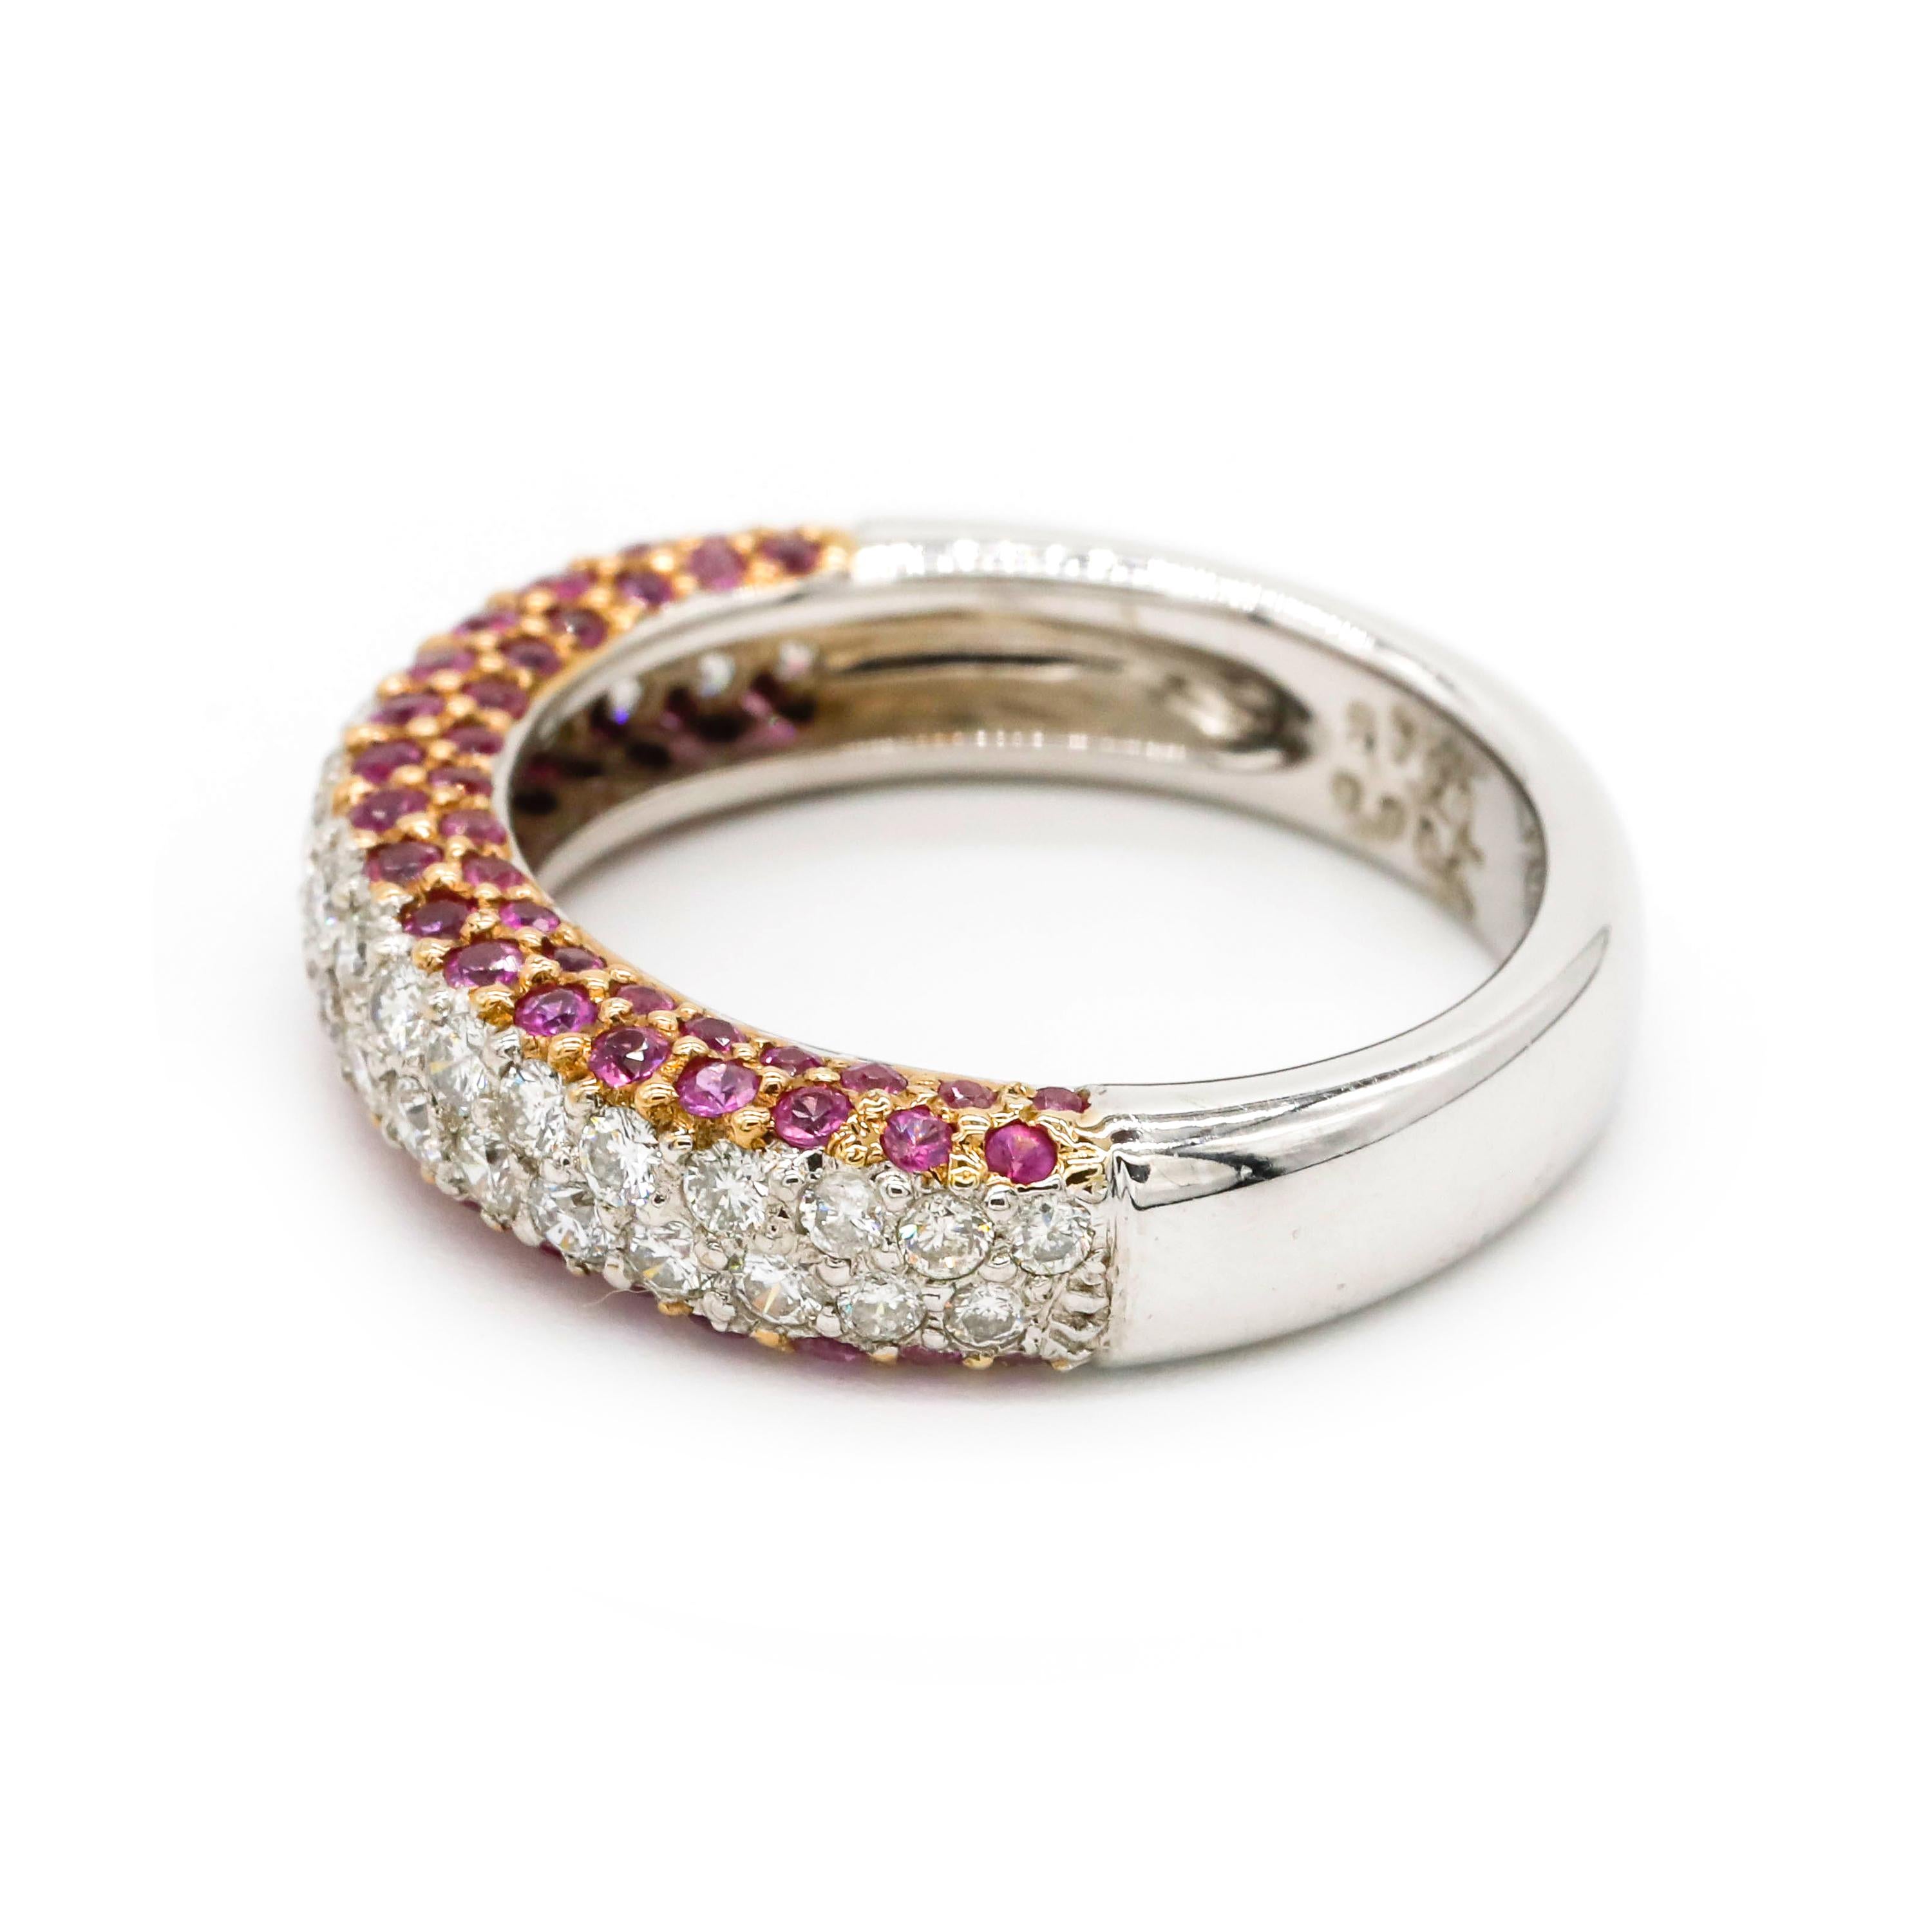 Runder Rubin in Pflasterfassung Diamant in Pflasterfassung Ring aus 18 k Weißgold

Ob als Ehering oder als Jubiläumsring - dieser Ring ist einfach perfekt. Mit einer einzigen Reihe natürlicher Rubine im Rundschliff, gefasst in einer Zackenfassung.